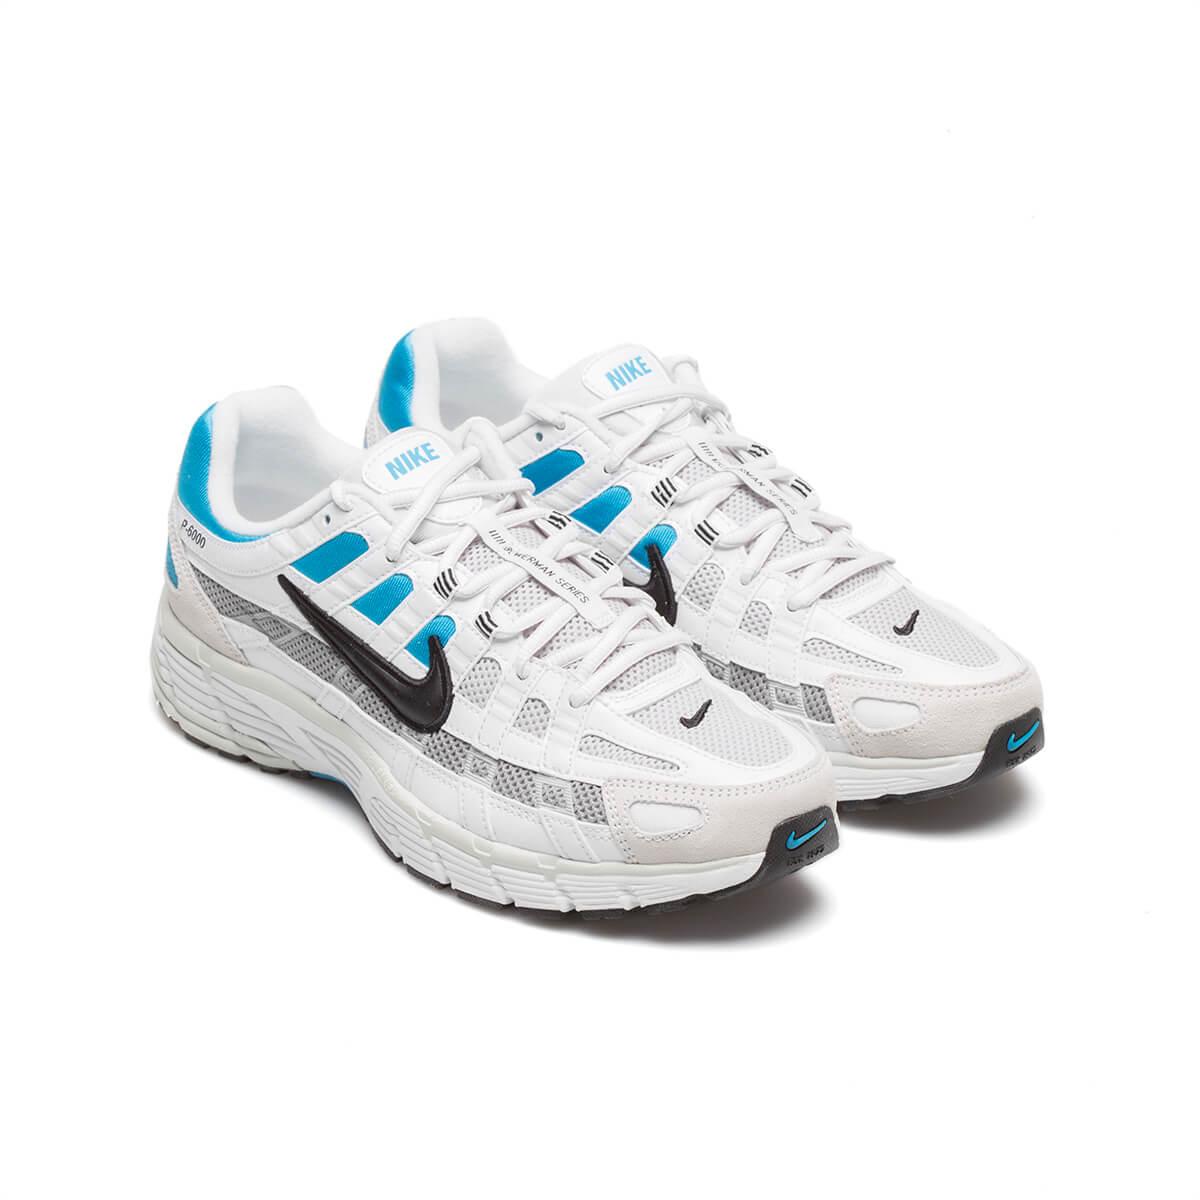 Nike P 6000 in White/Blue (Blue) for Men - Lyst